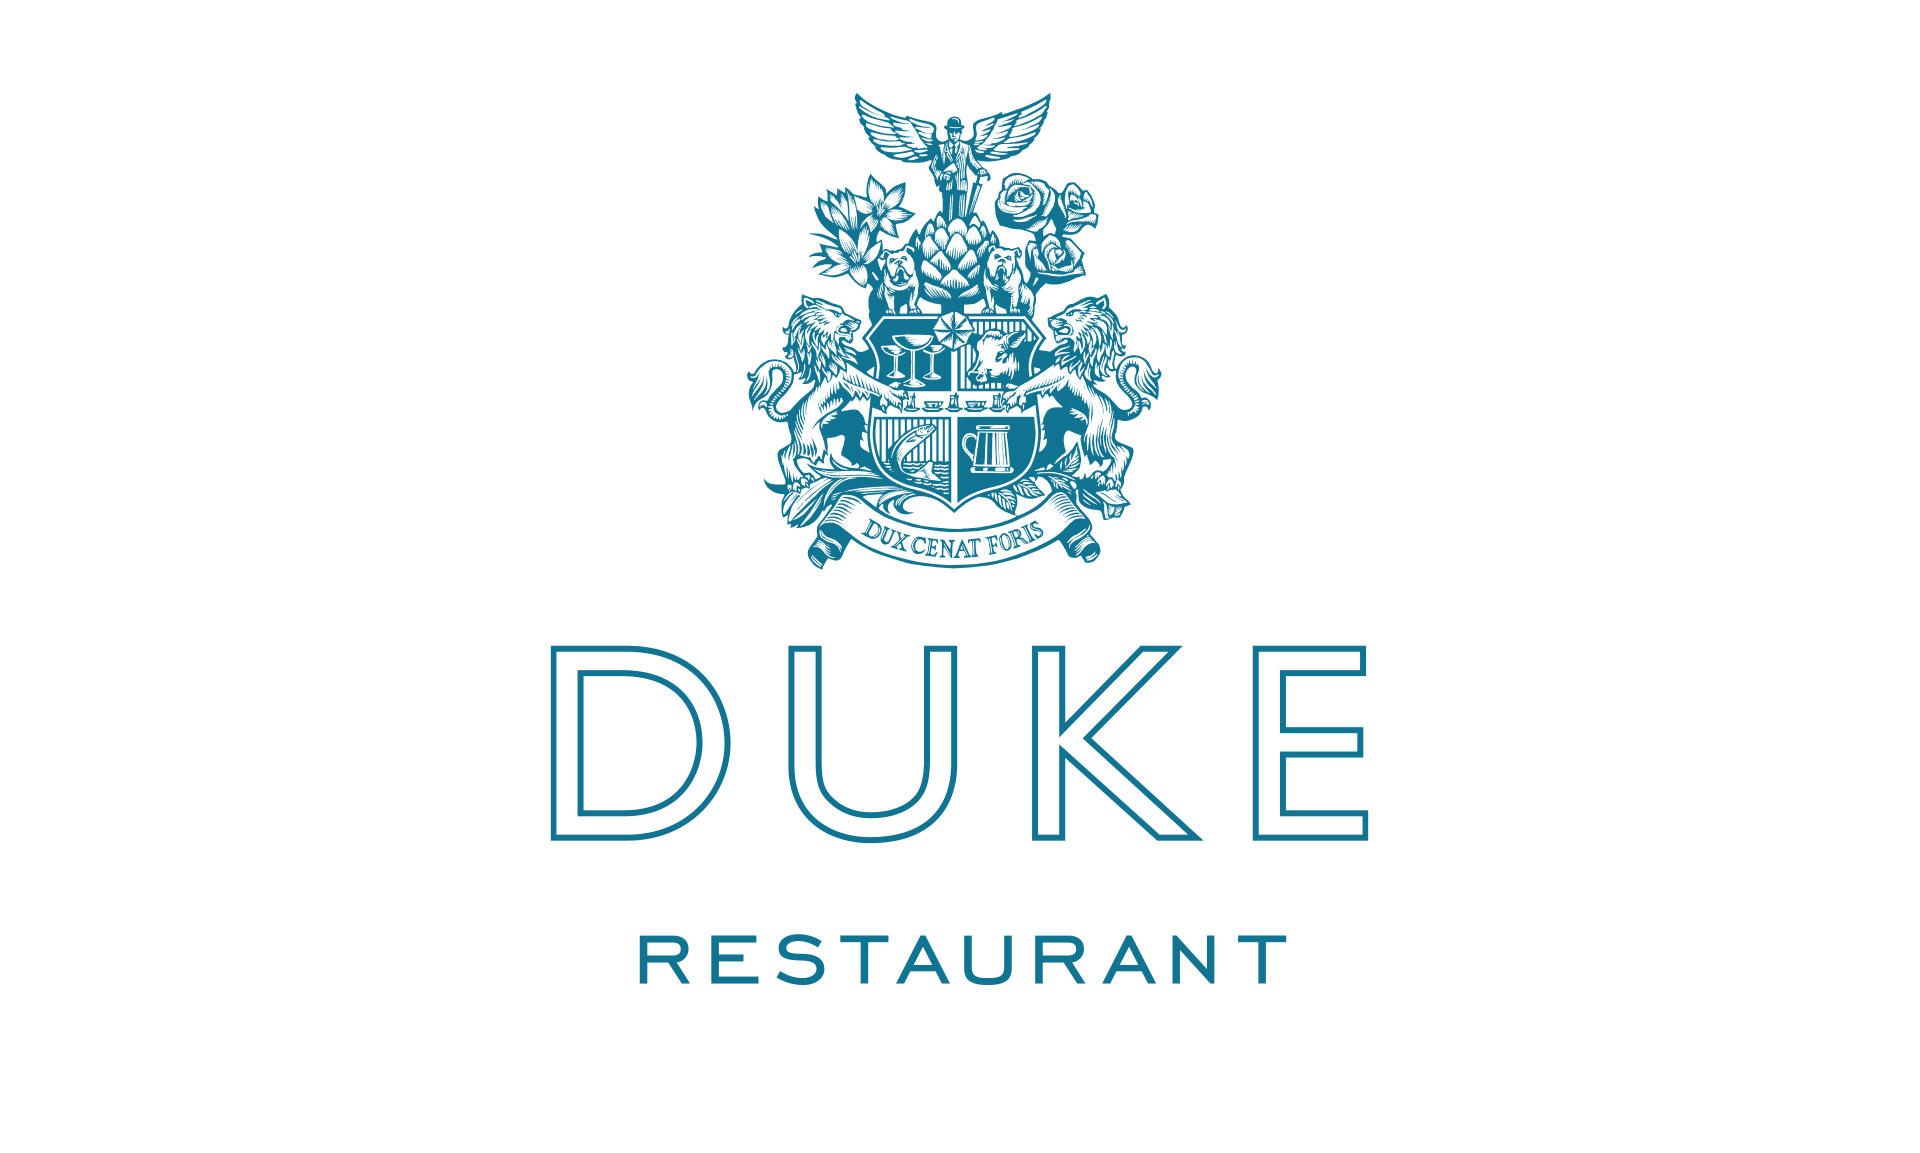 Duke Restaurant London Branding Design